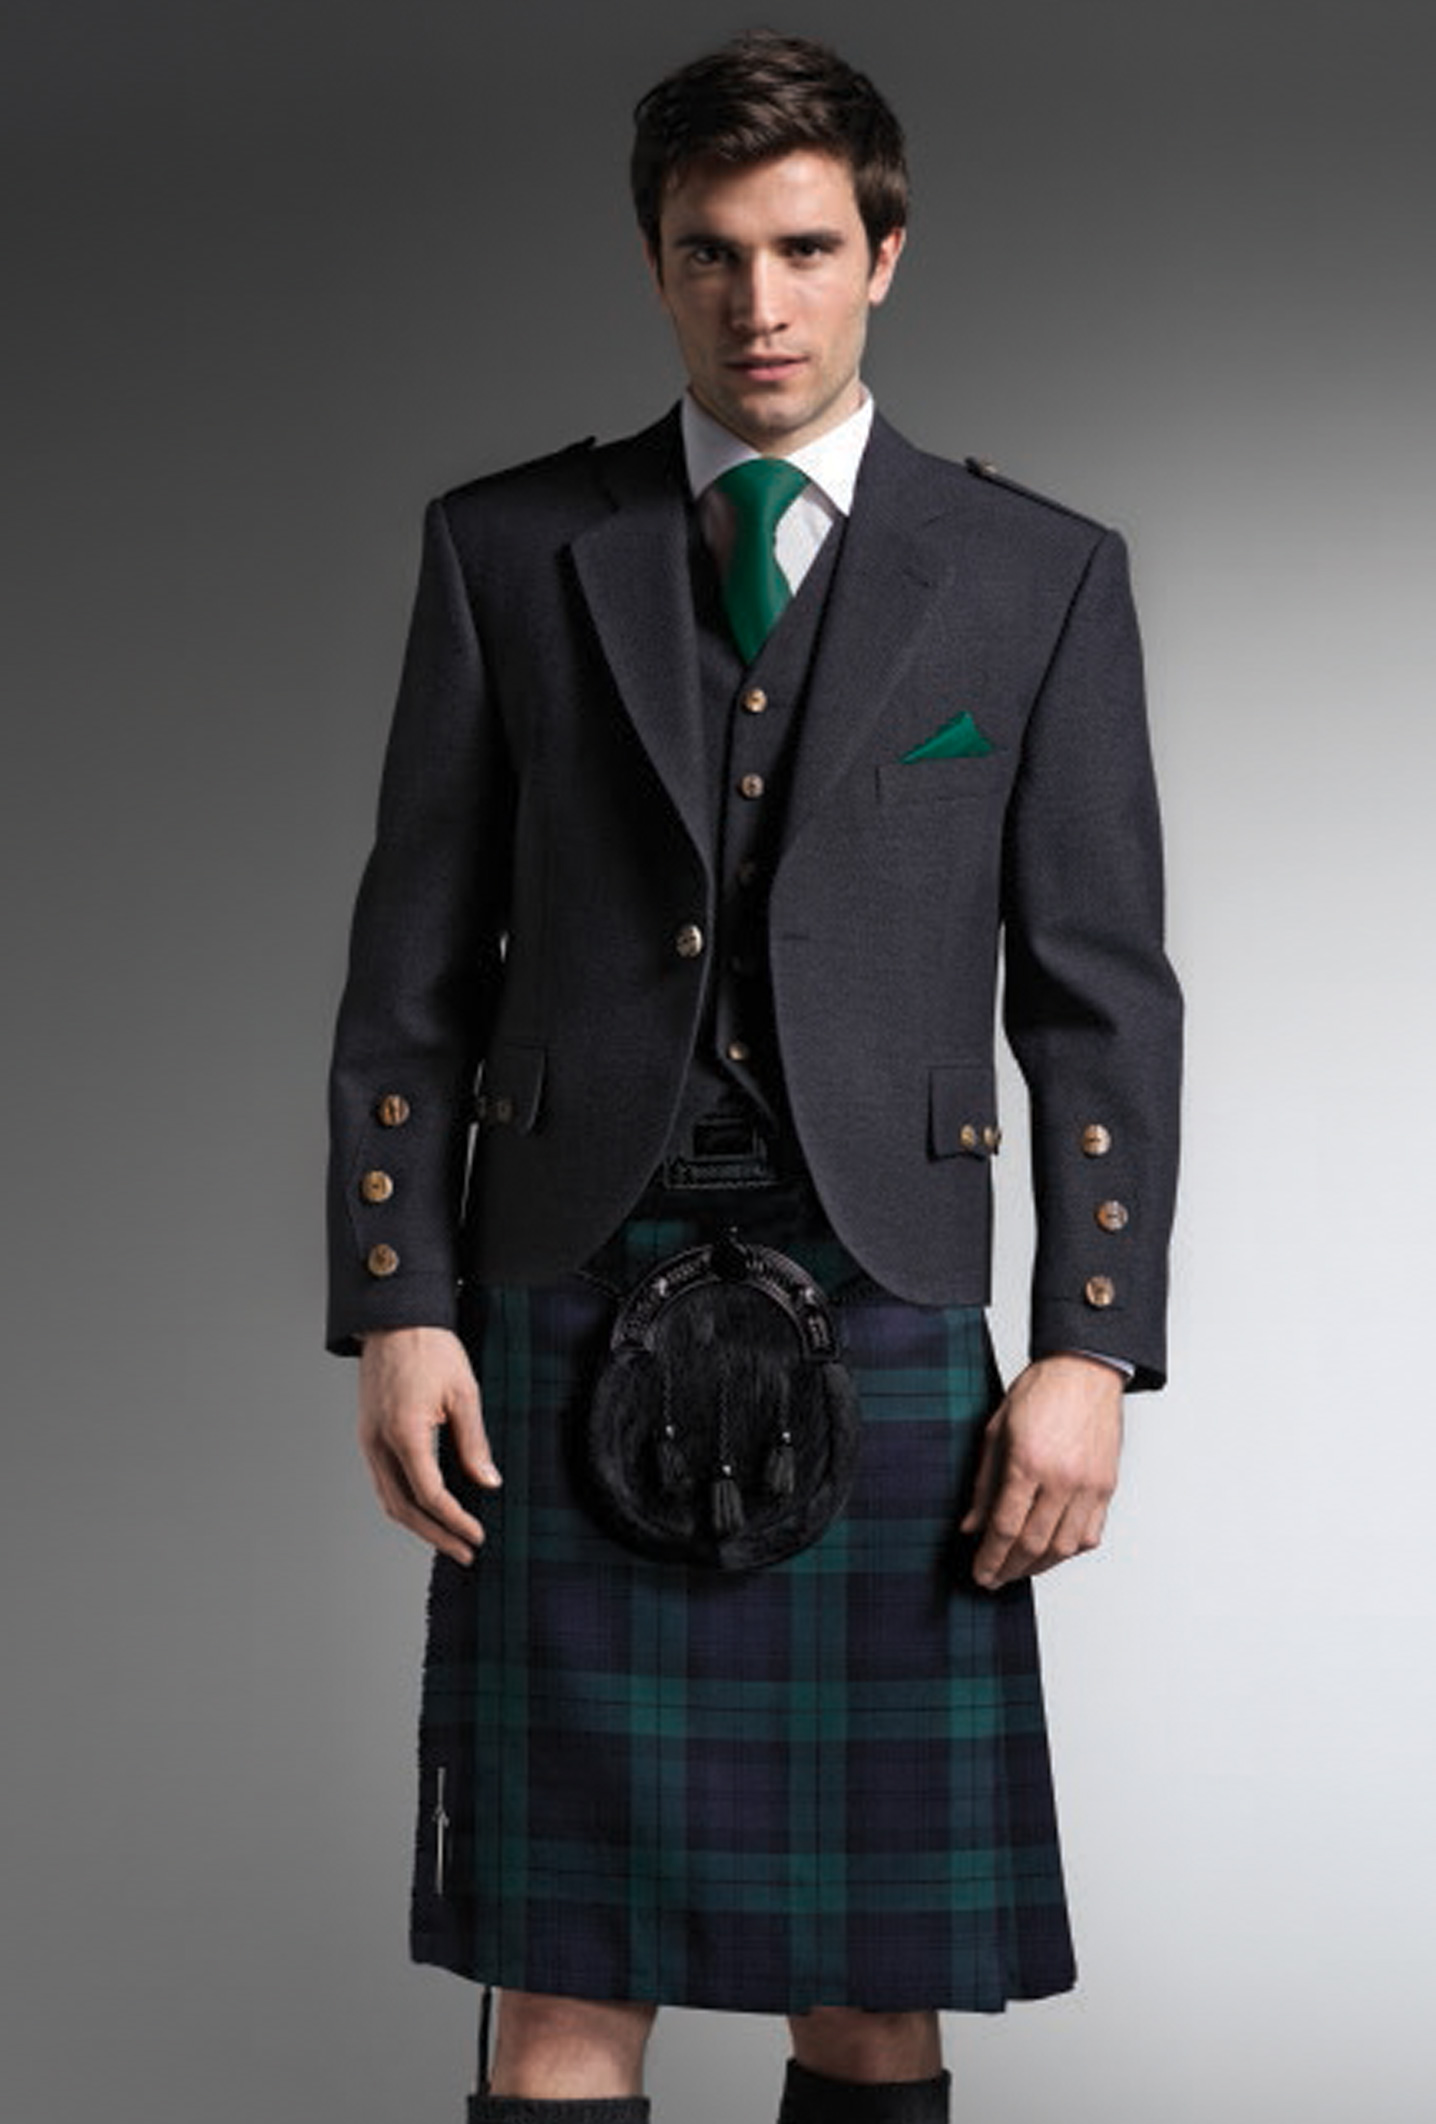 Highland Wear – HRH Holmes